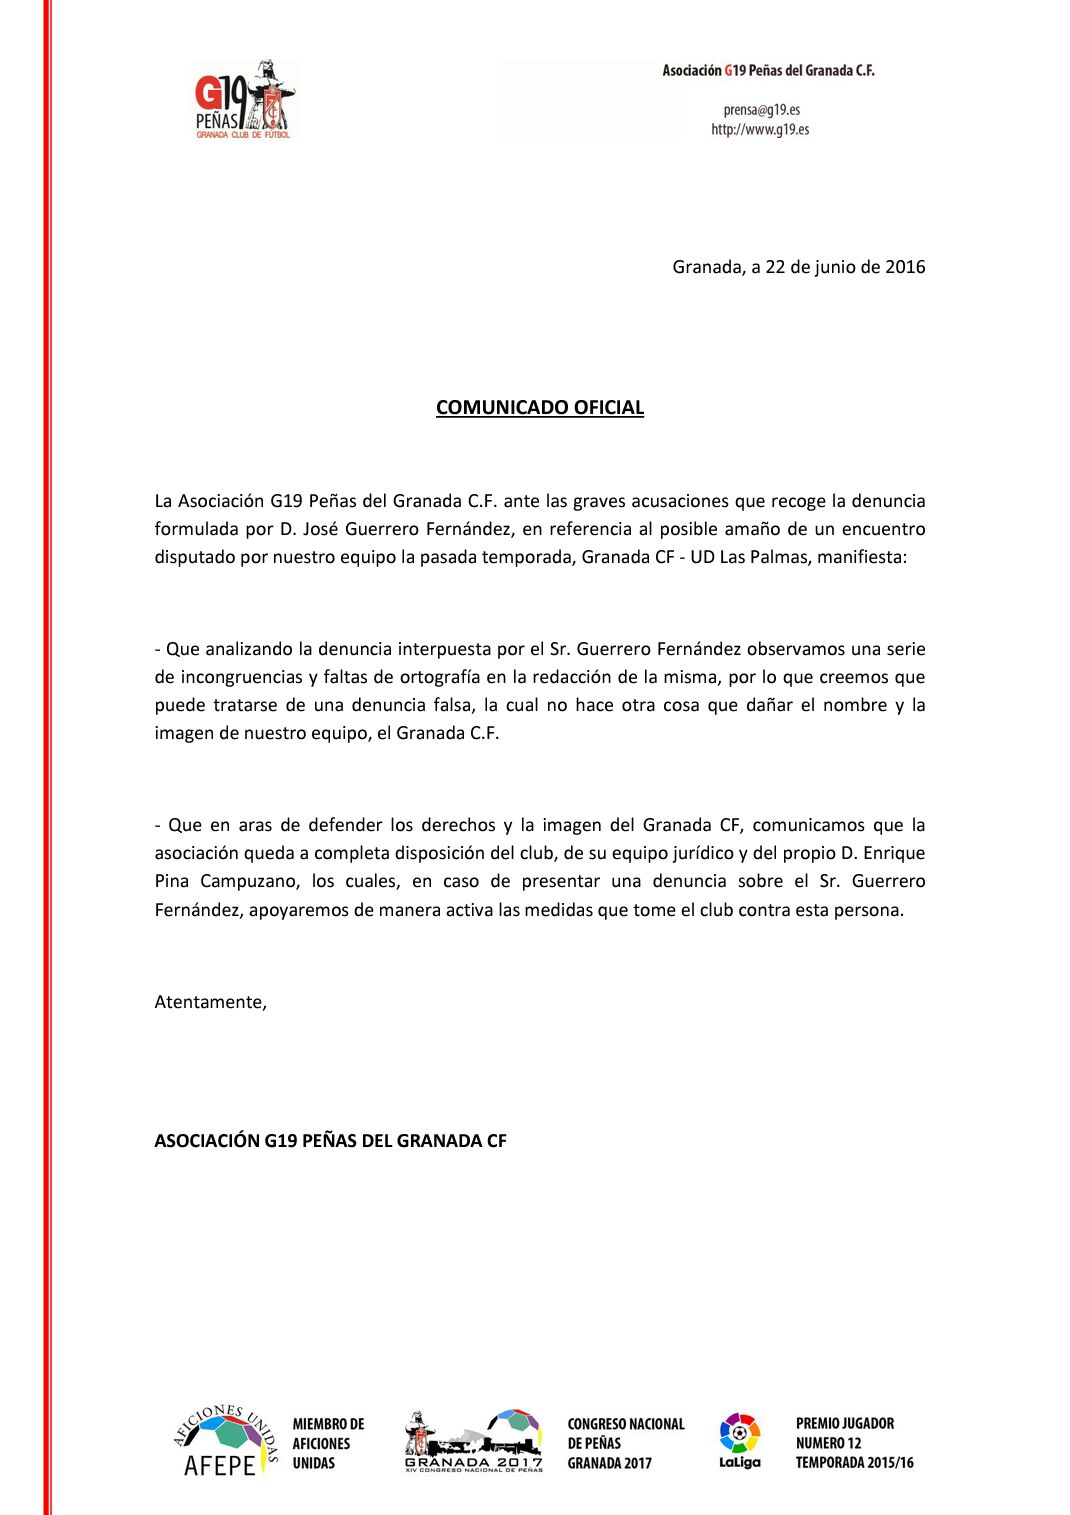 Comunicado denuncia sobre posible amaño Granada CF - UD Las Palmas